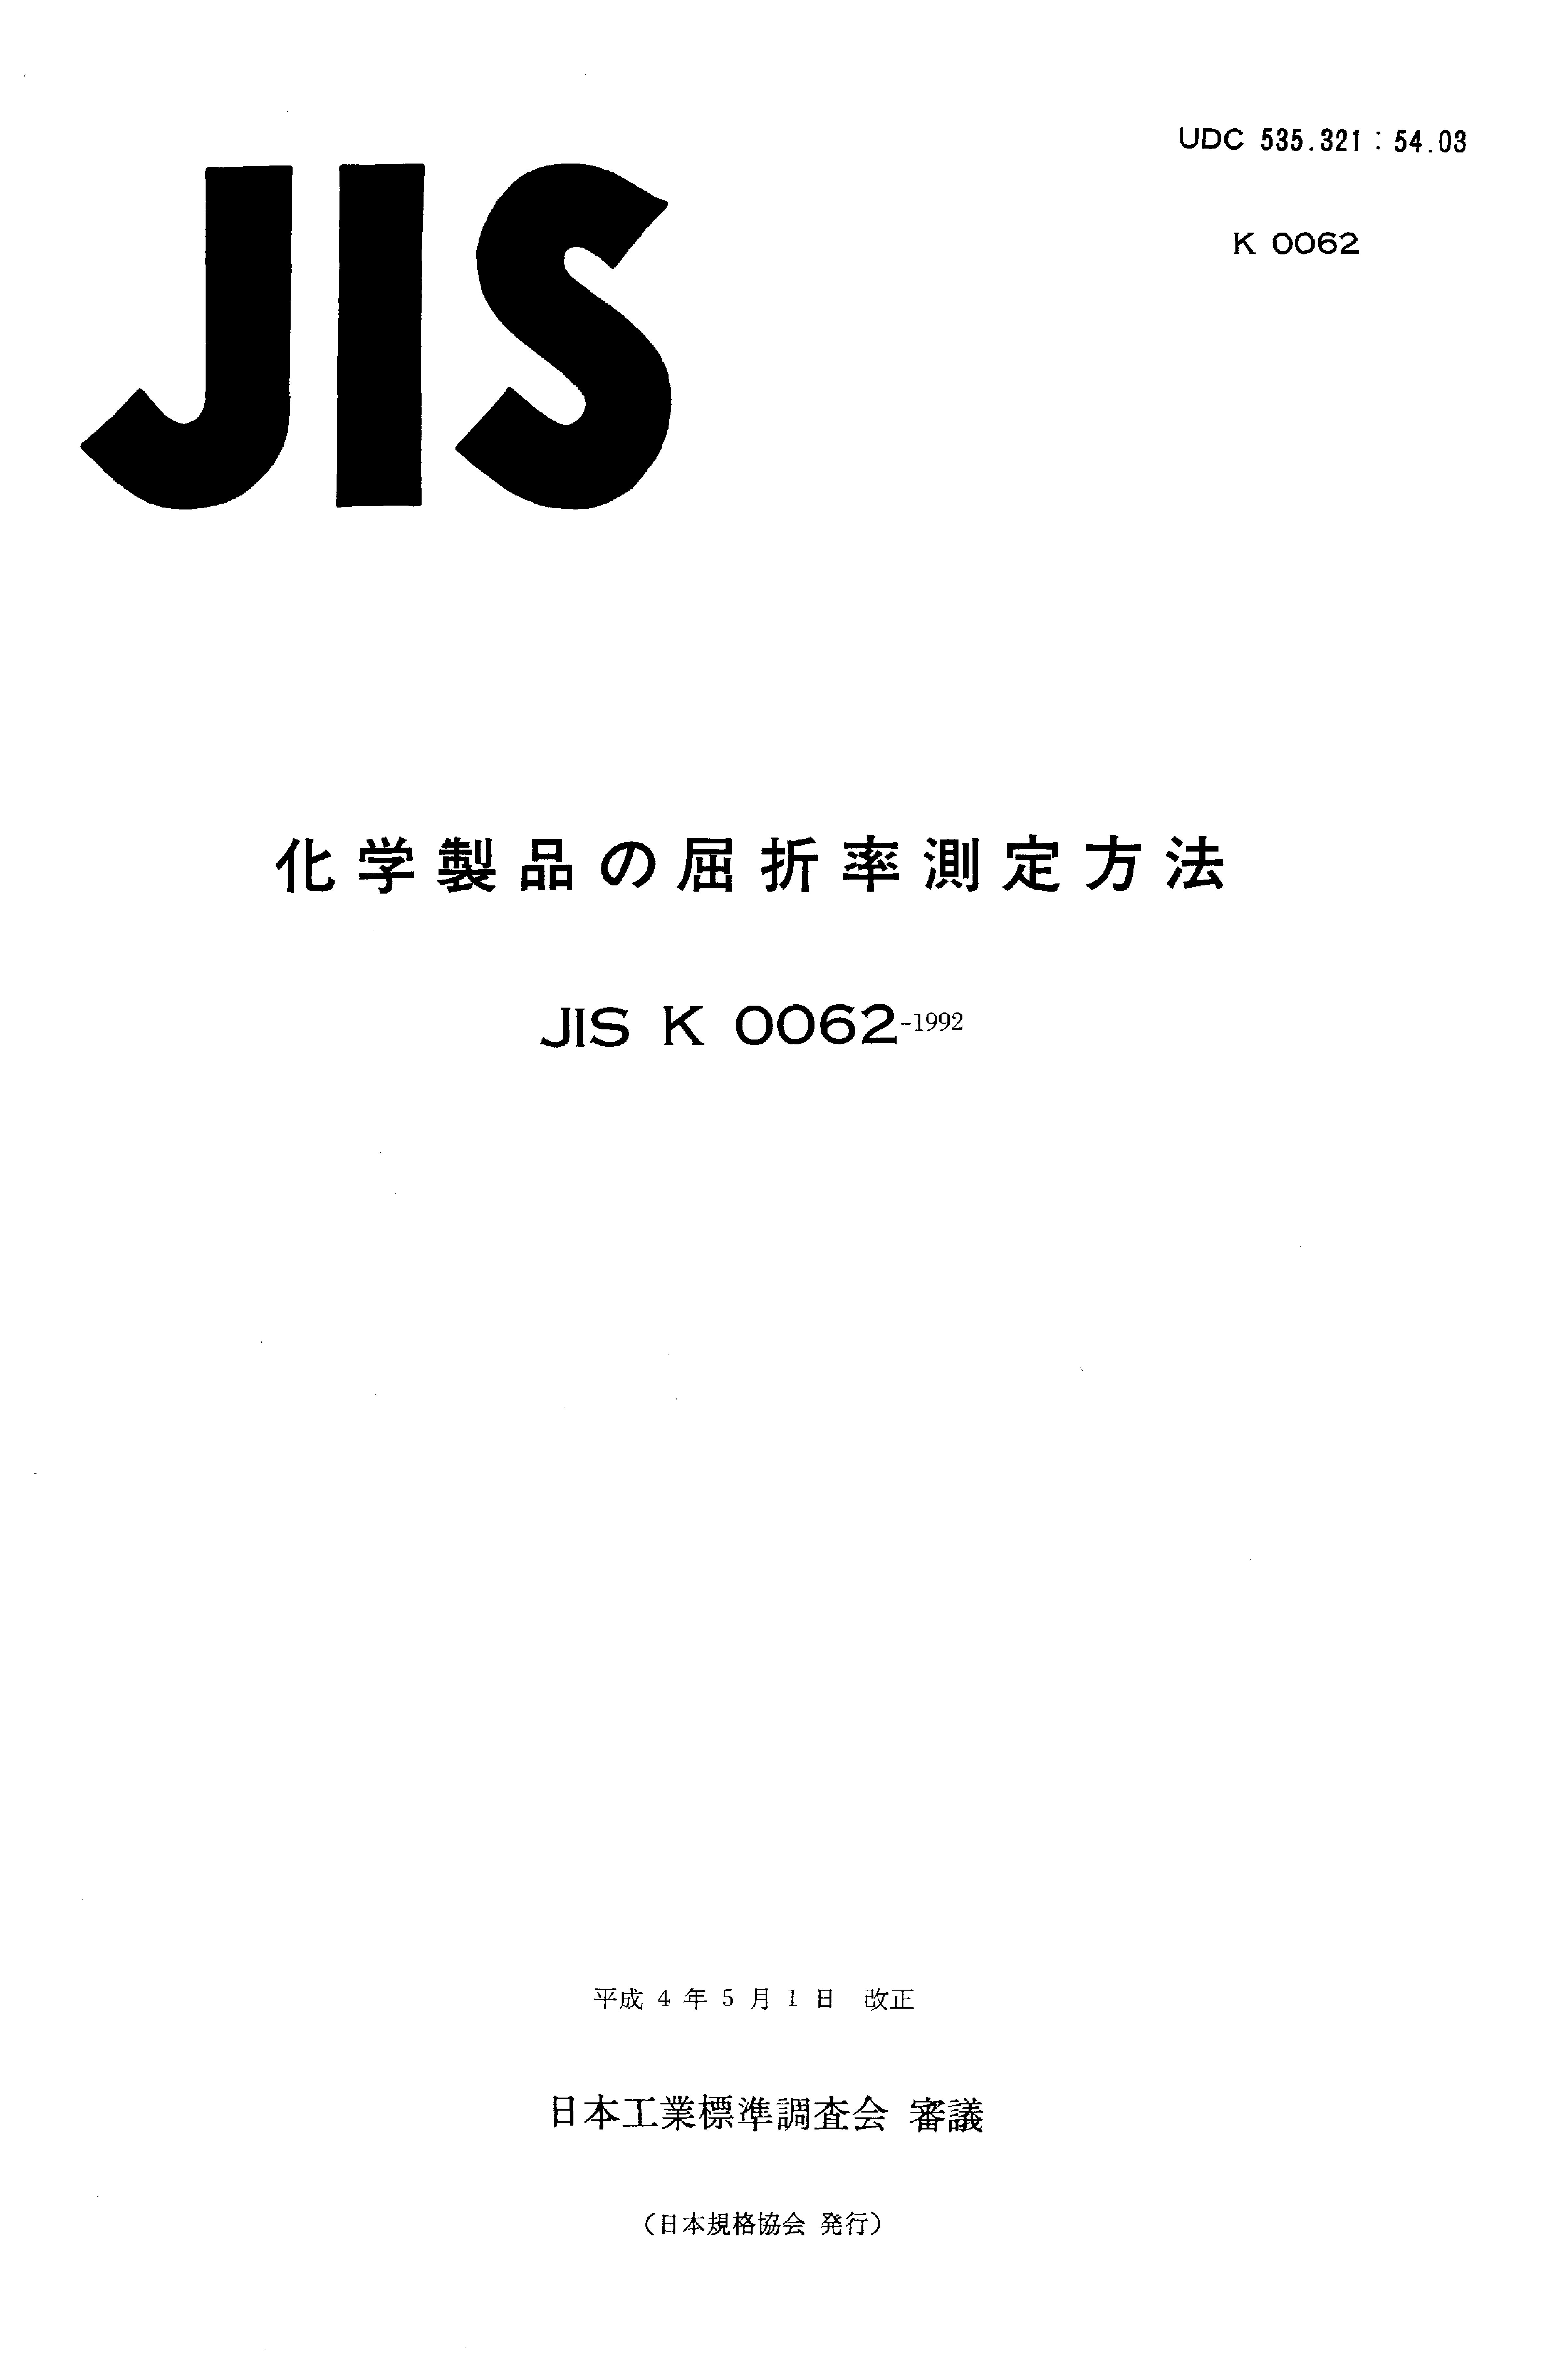 JIS K 0062:1992